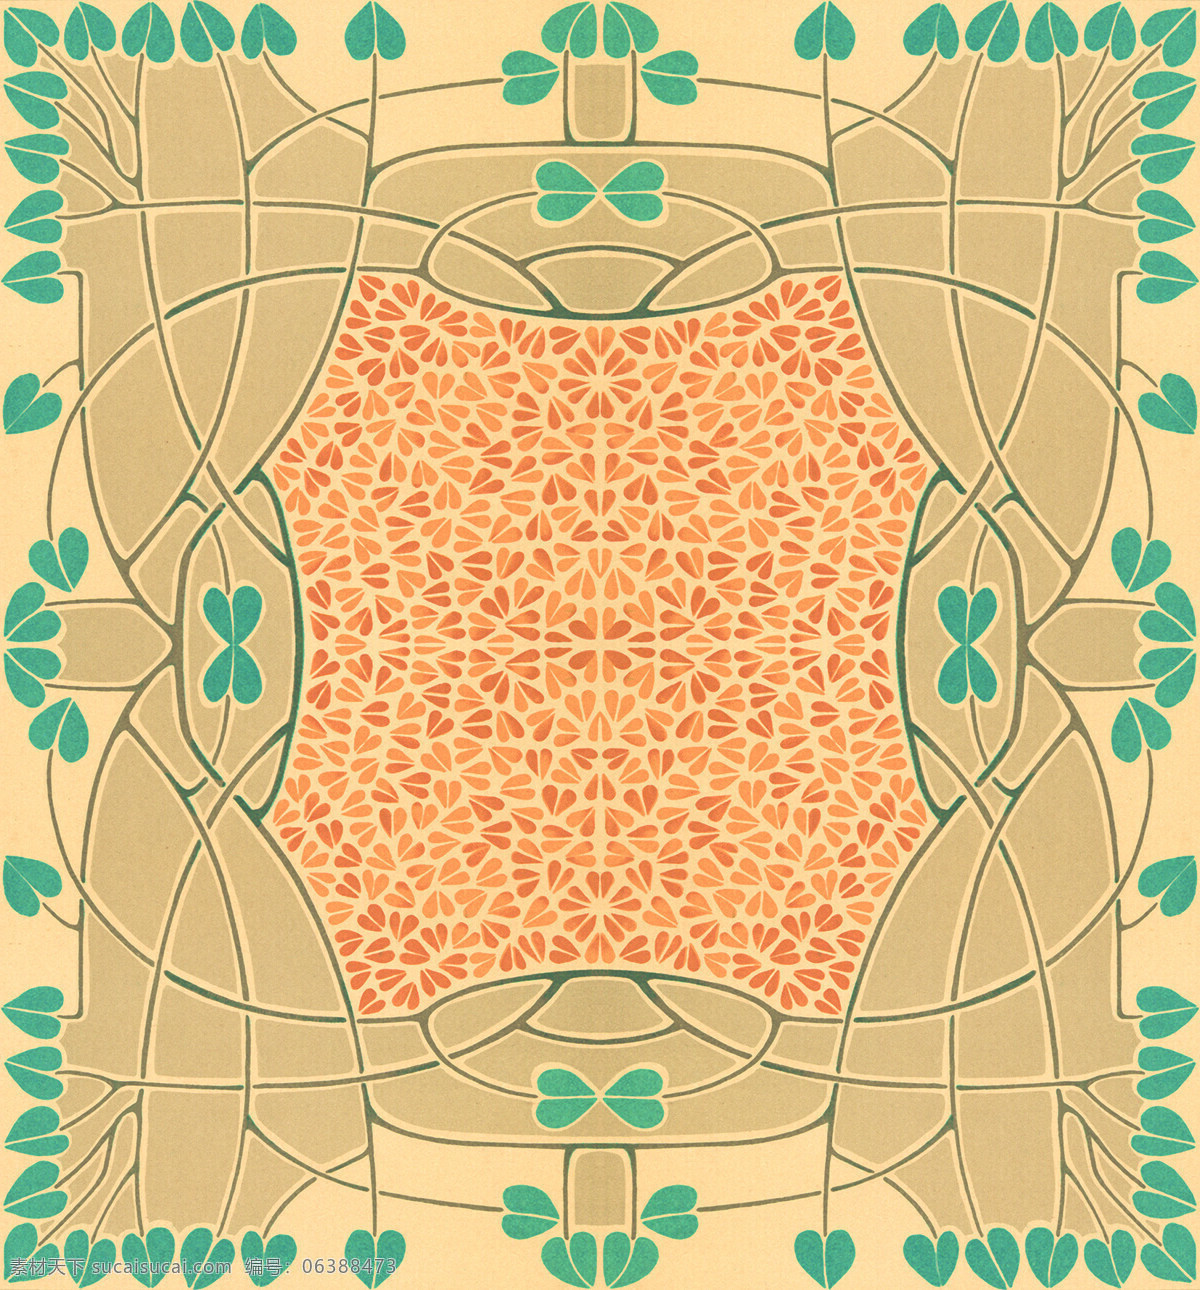 地毯免费下载 布料 布匹 地毯 花纹 矩形 毛毯 欧洲风情 图纹 印度风情 坐垫